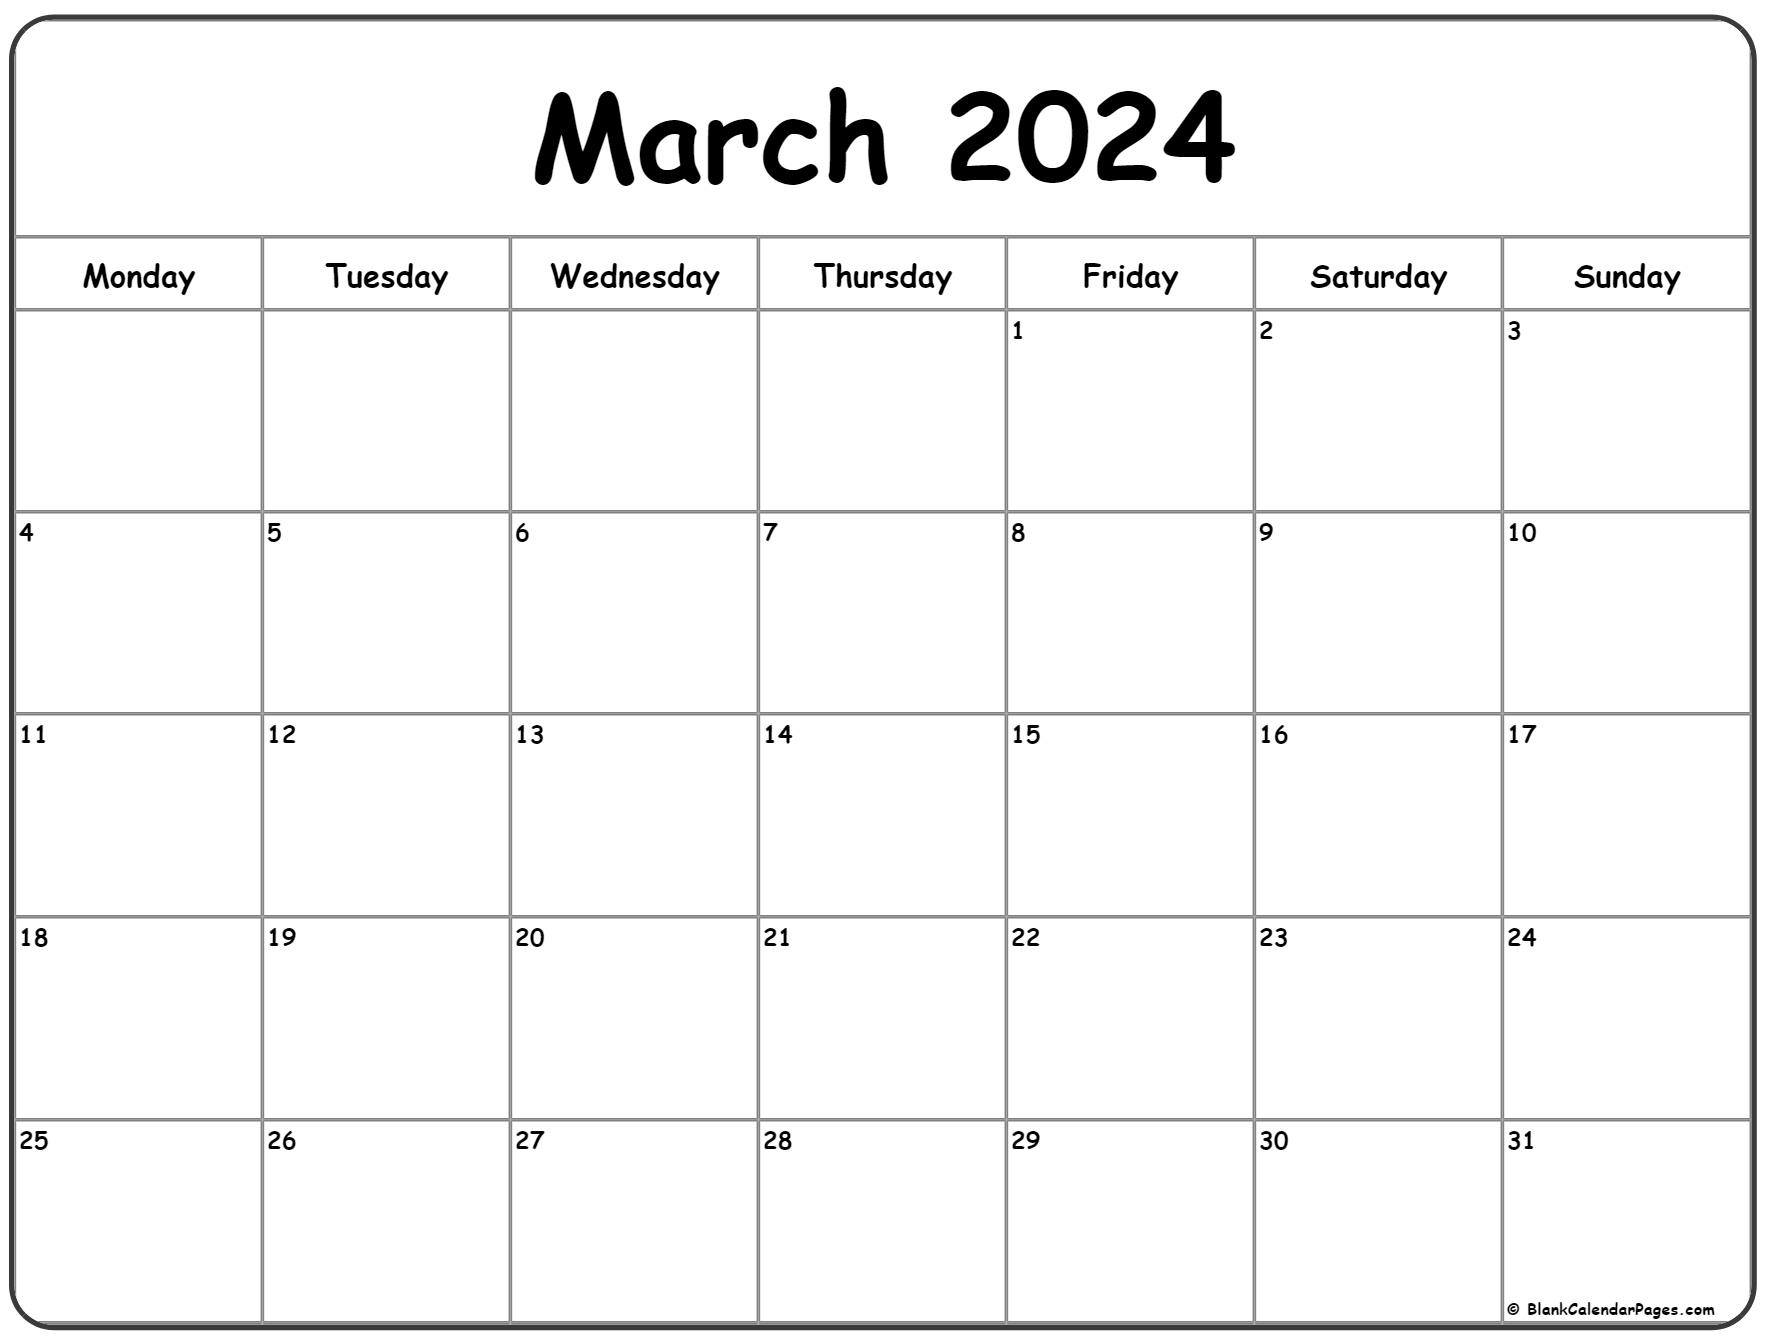 March 2024 Monday Calendar | Monday To Sunday | Calendar March 2024 Calendar Printable